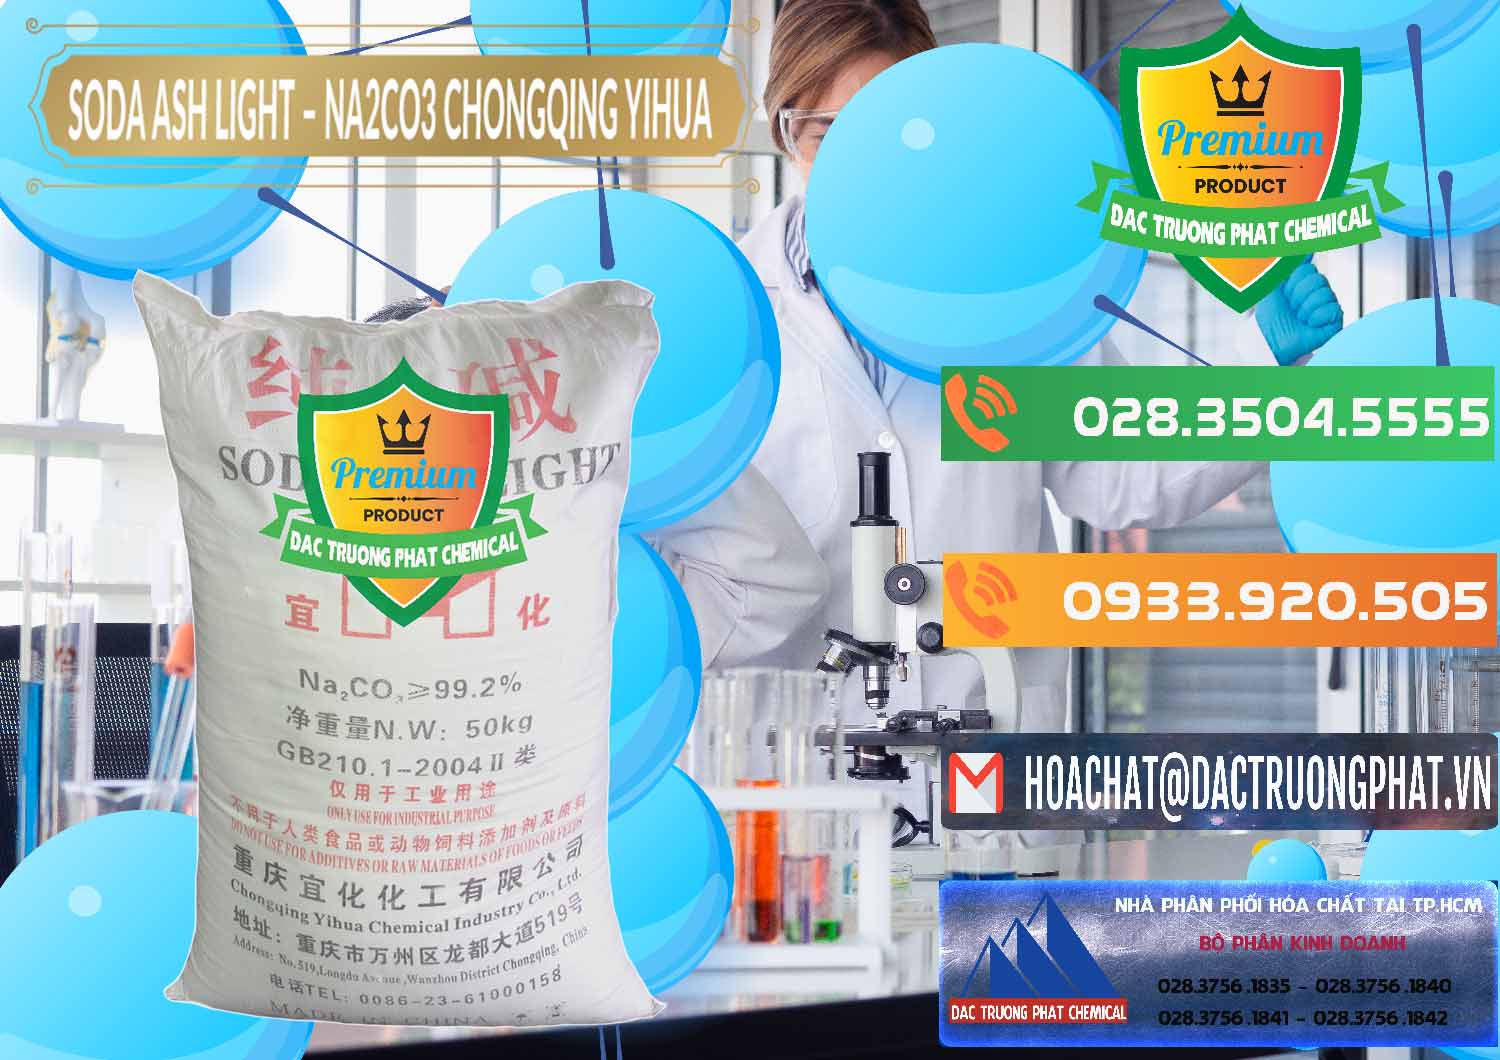 Cty chuyên bán & cung ứng Soda Ash Light - NA2CO3 Chongqing Yihua Trung Quốc China - 0129 - Nơi chuyên cung cấp ( nhập khẩu ) hóa chất tại TP.HCM - hoachatxulynuoc.com.vn